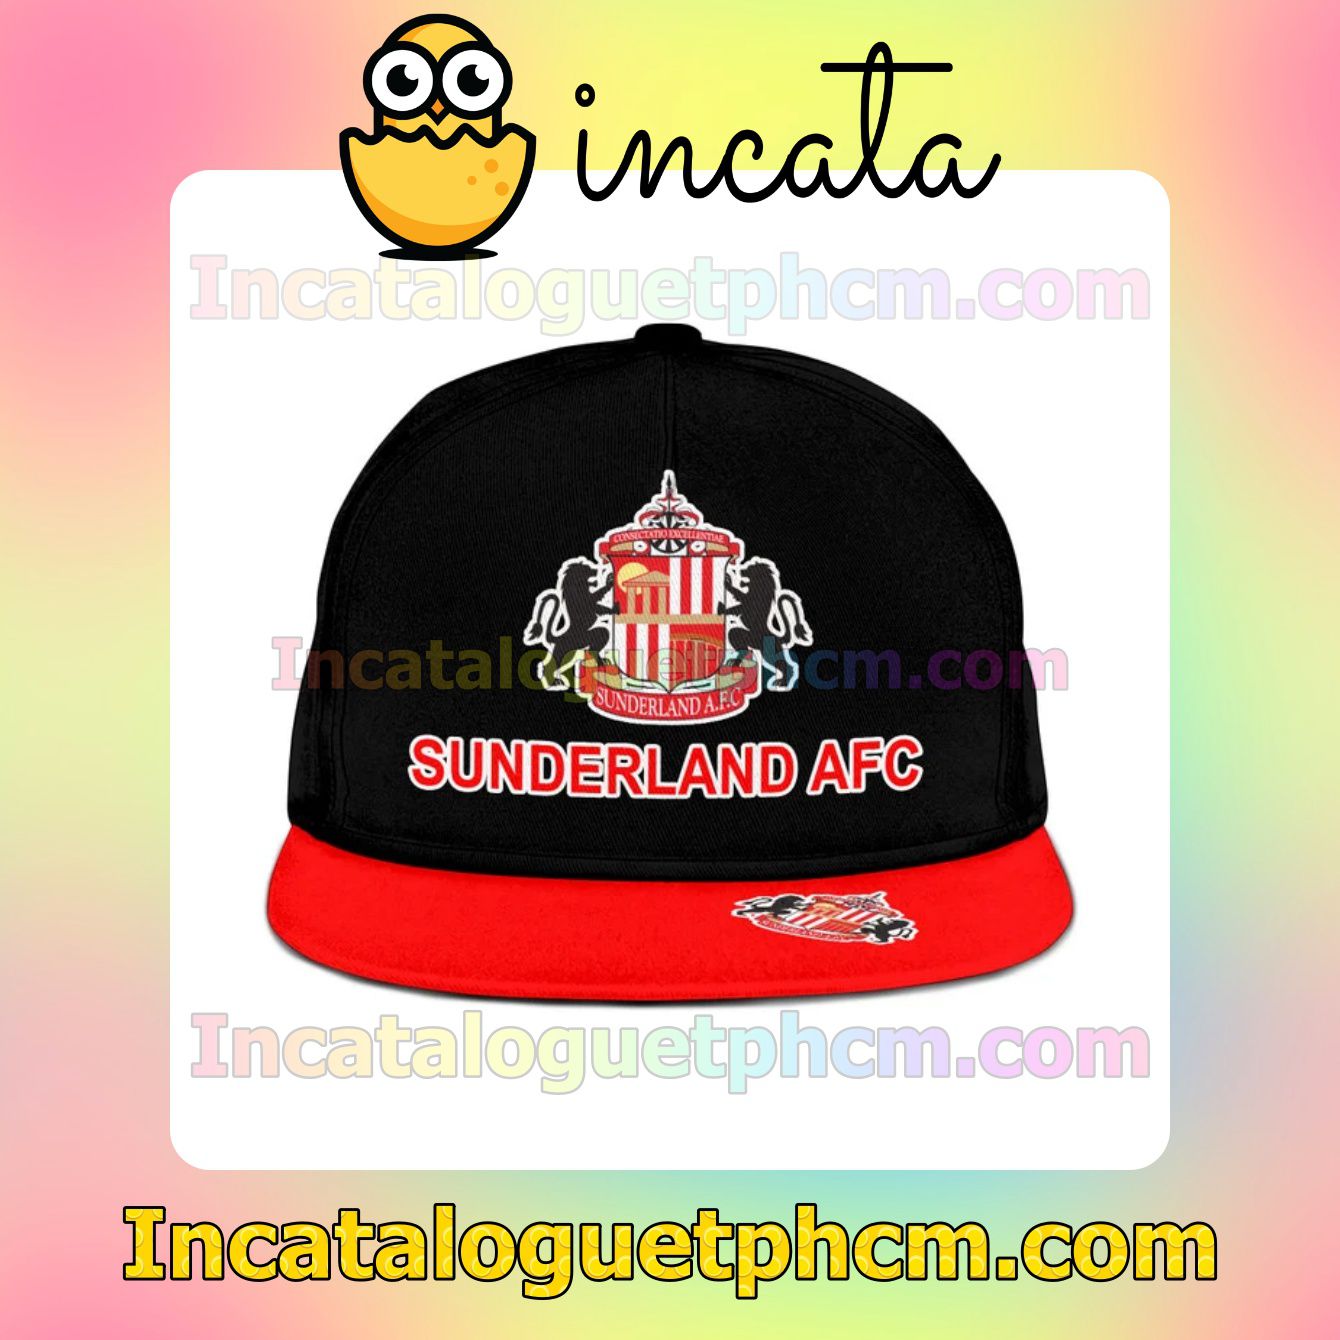 Sunderland AFC Outdoors Hat